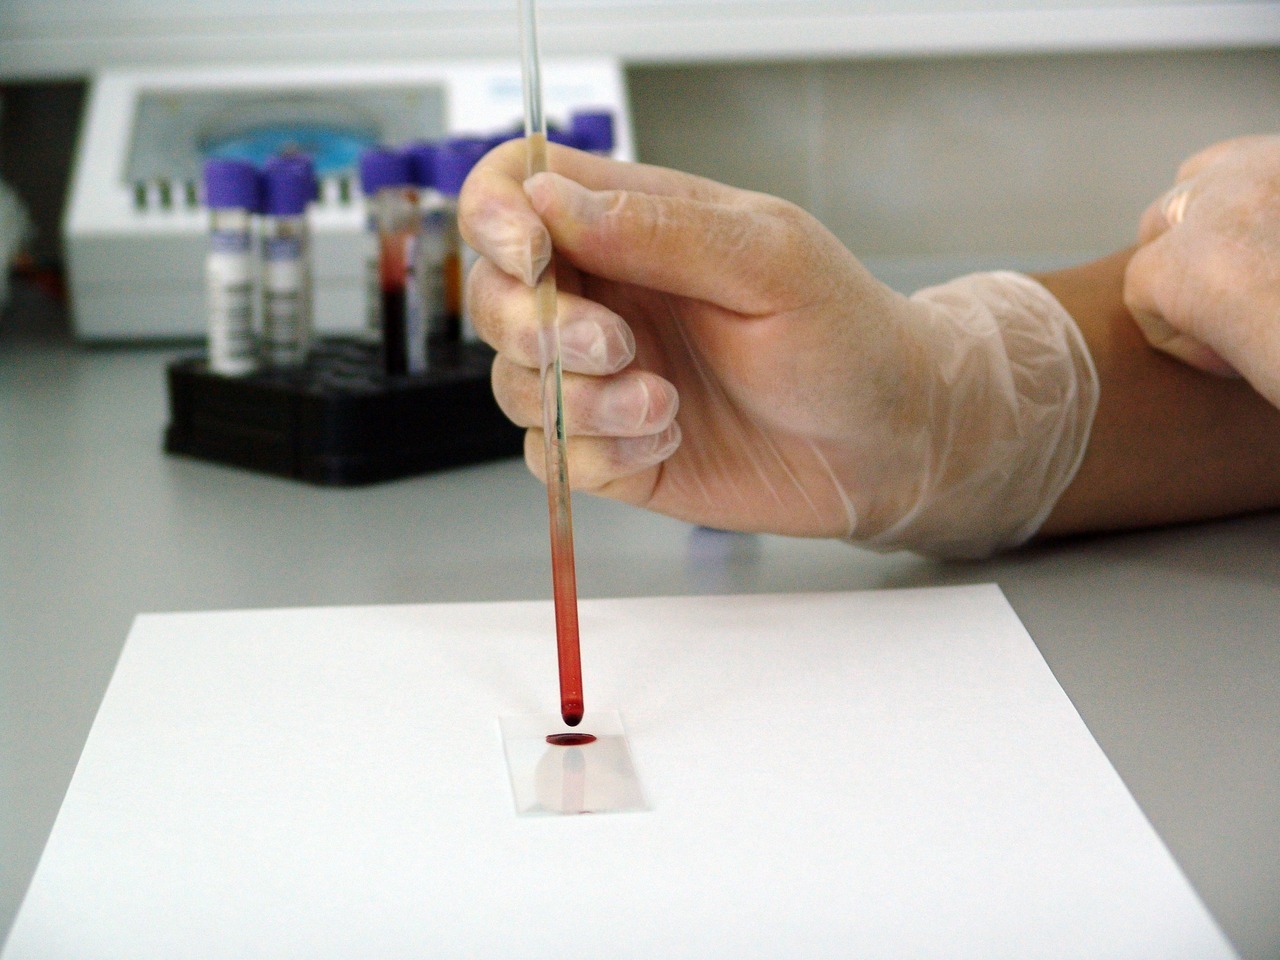 Une analyse de sang peut aider à détecter une adénopathie mésentérique